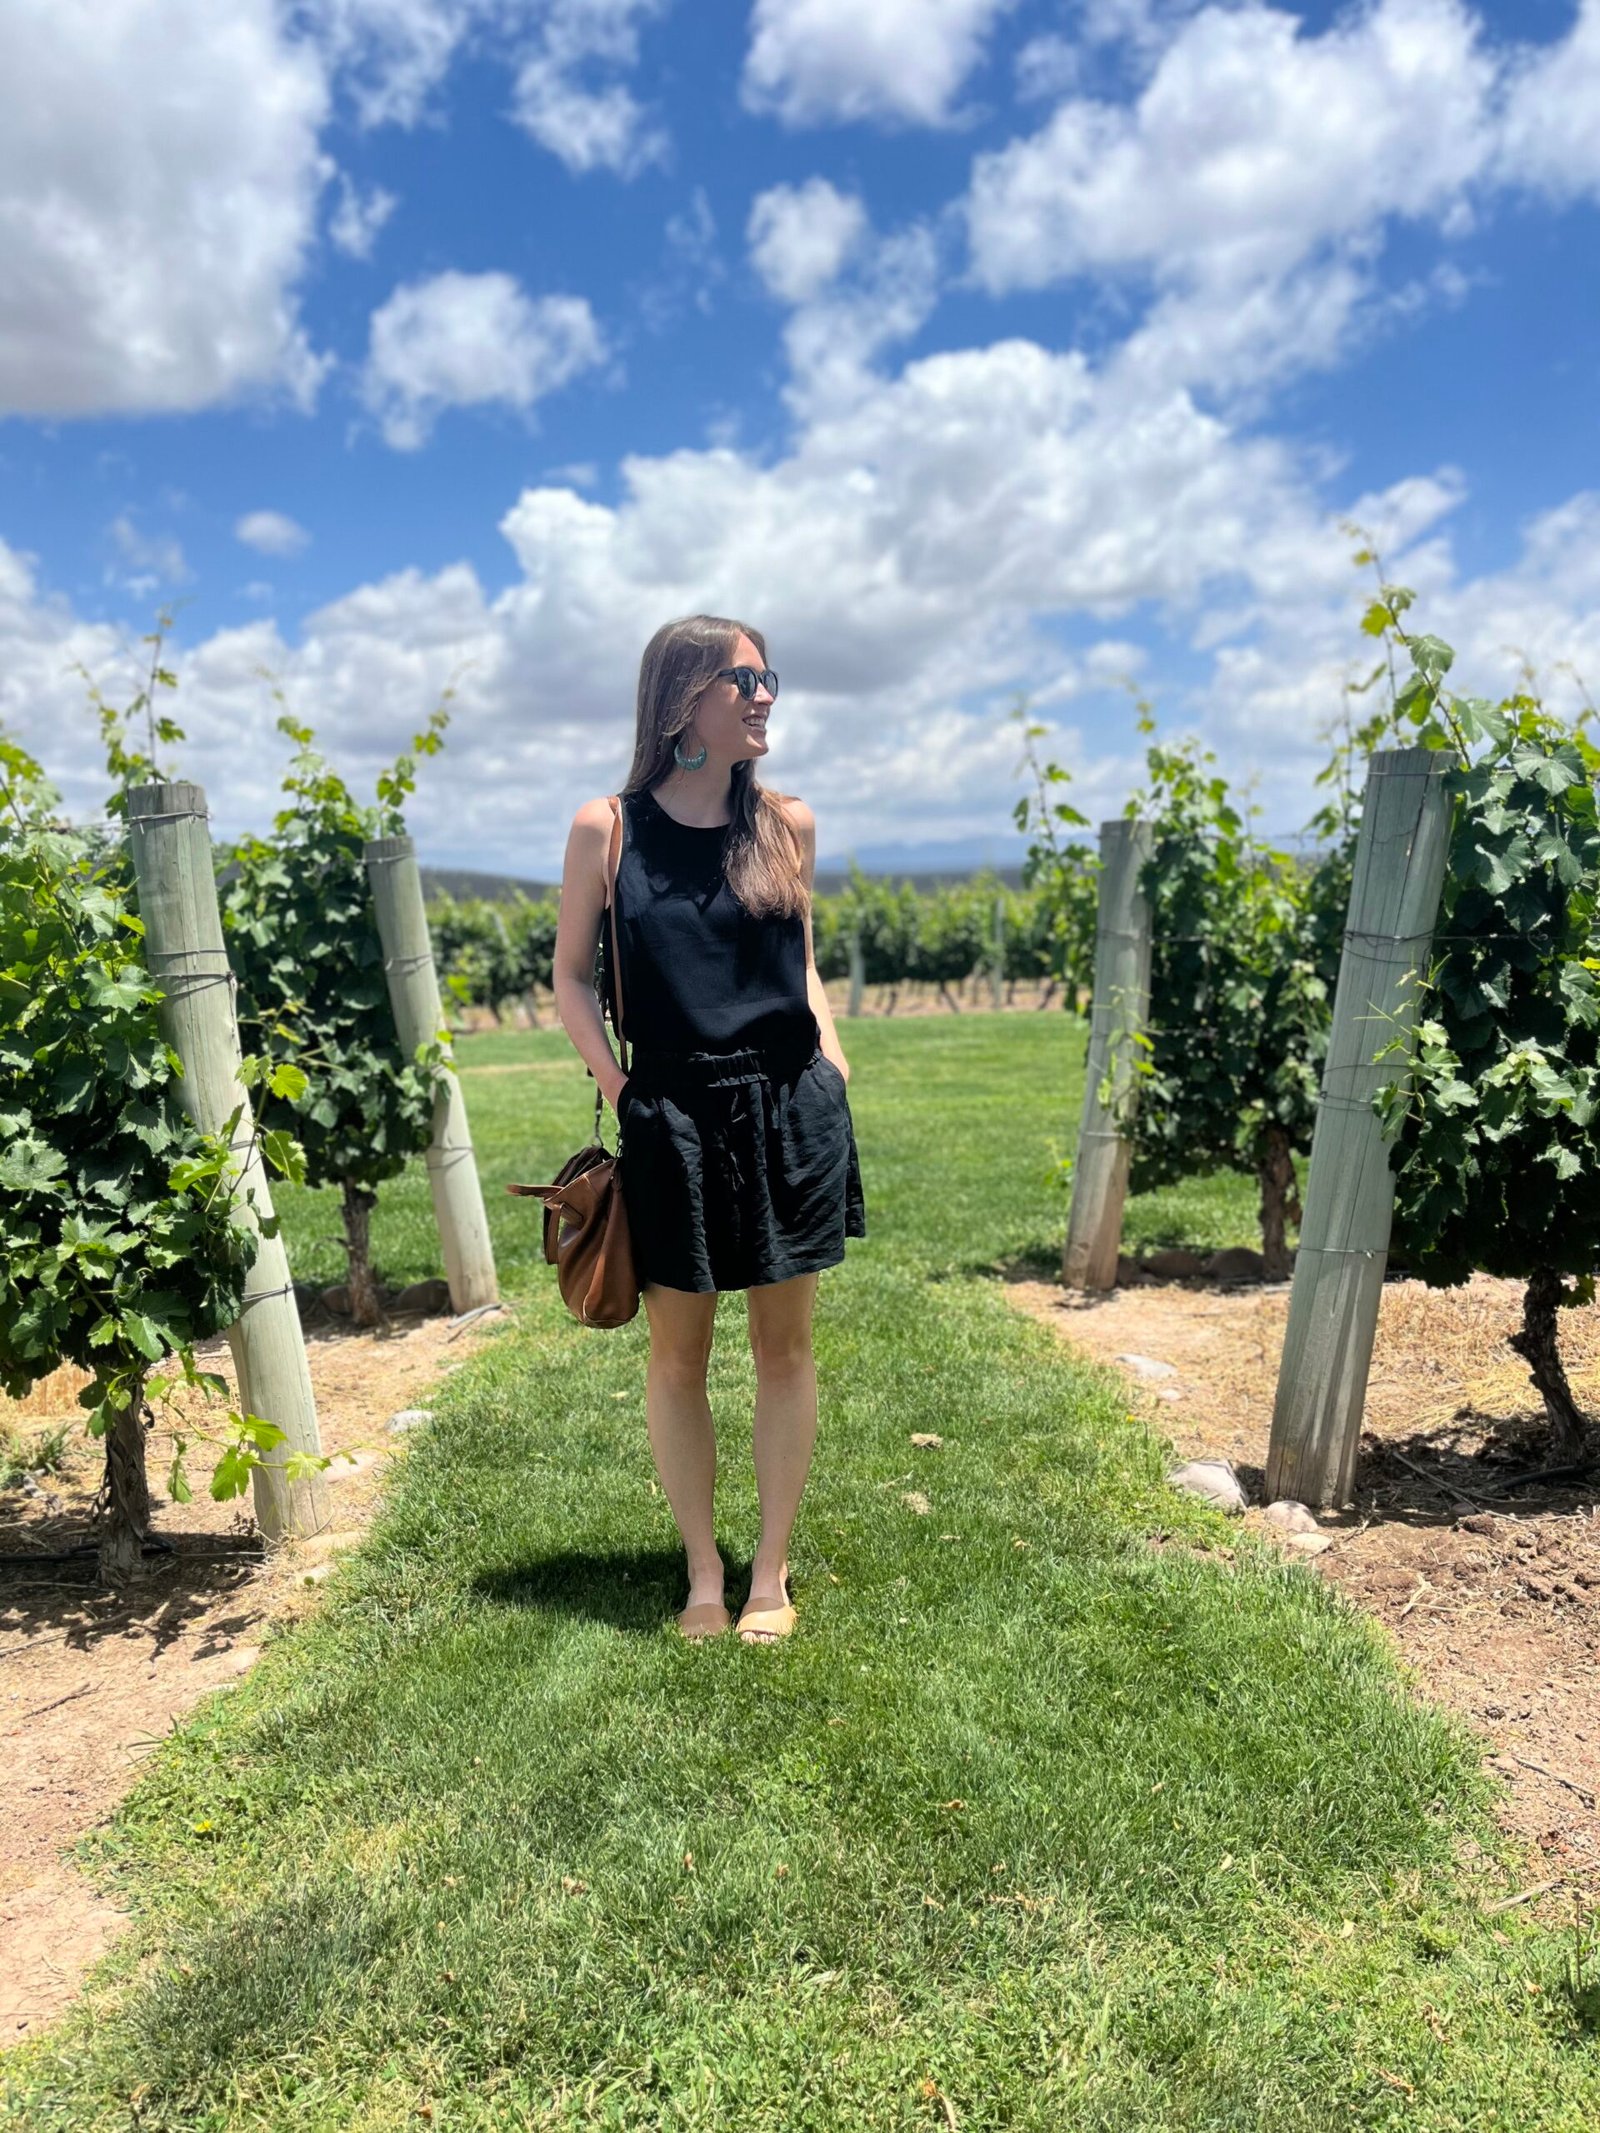 Norton vineyard in Mendoza